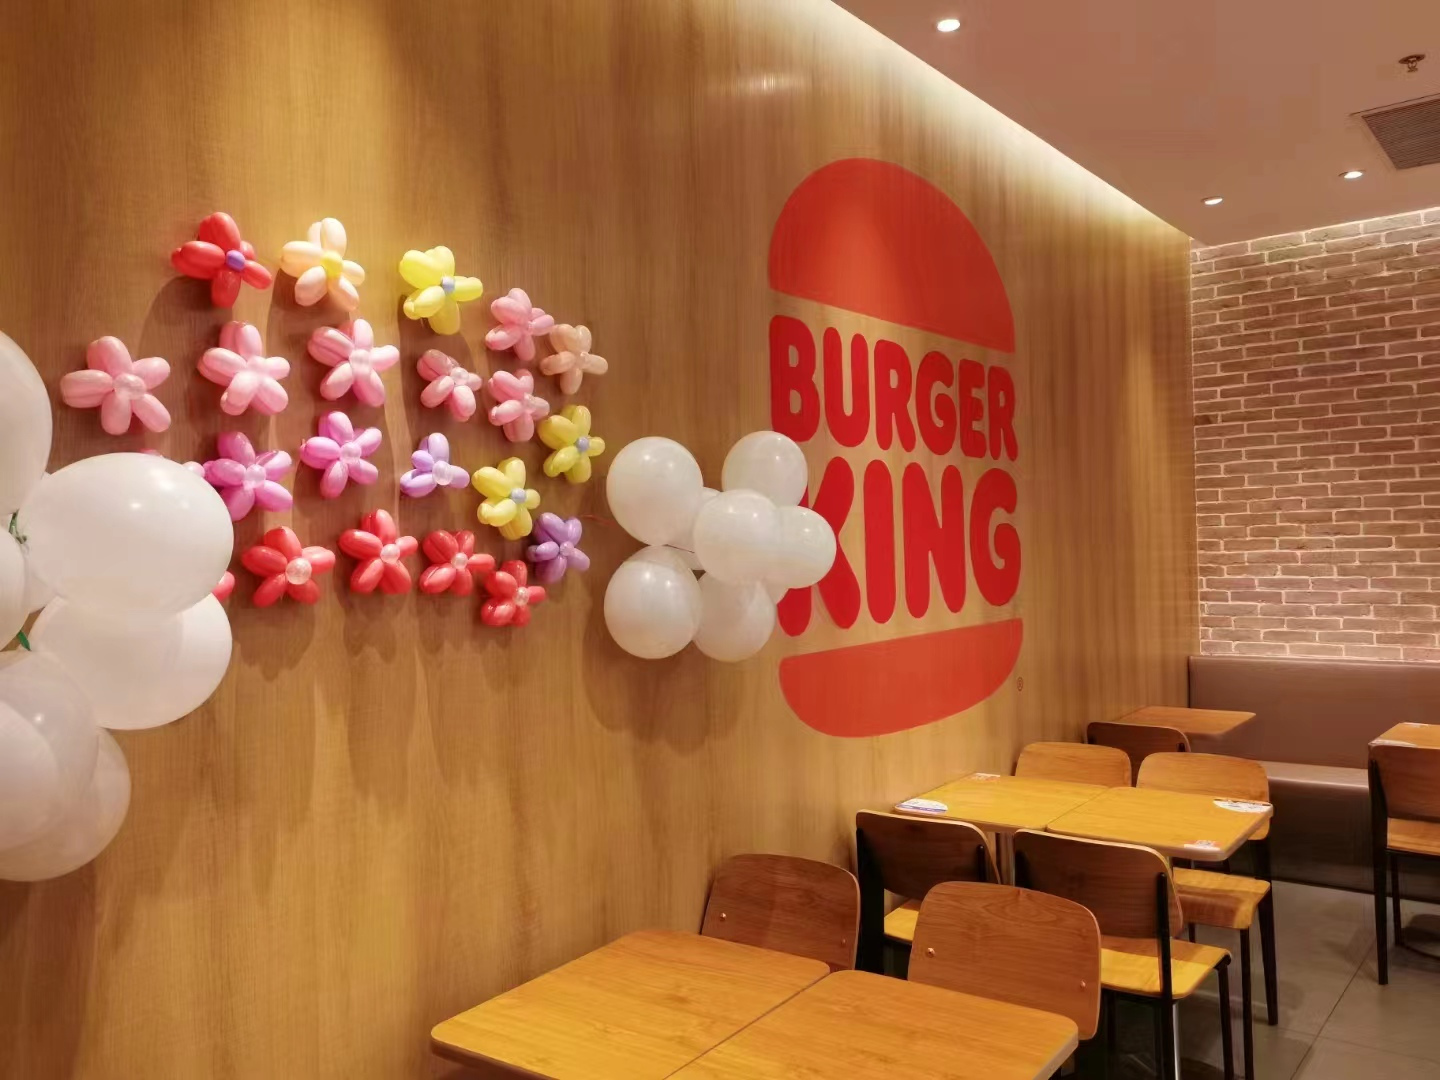 全球大型连锁快餐汉堡王正式入驻开业